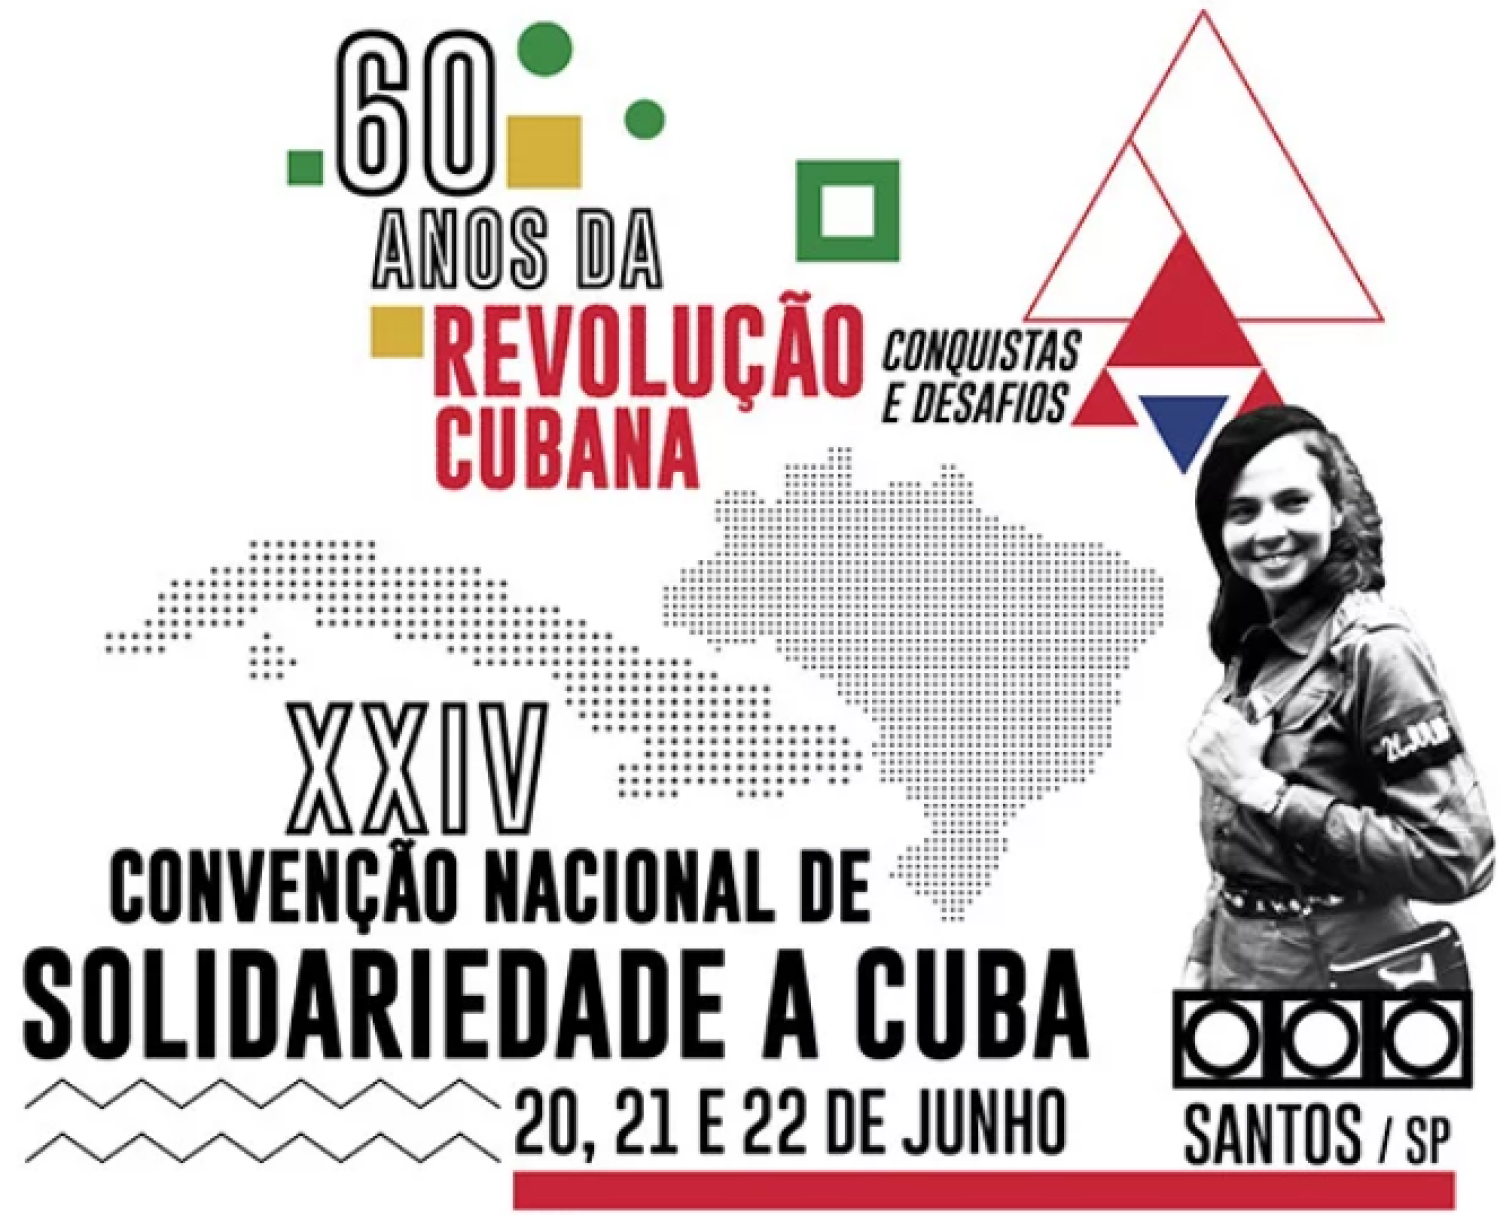 XXIV Convenção Nacional de Solidariedade a Cuba